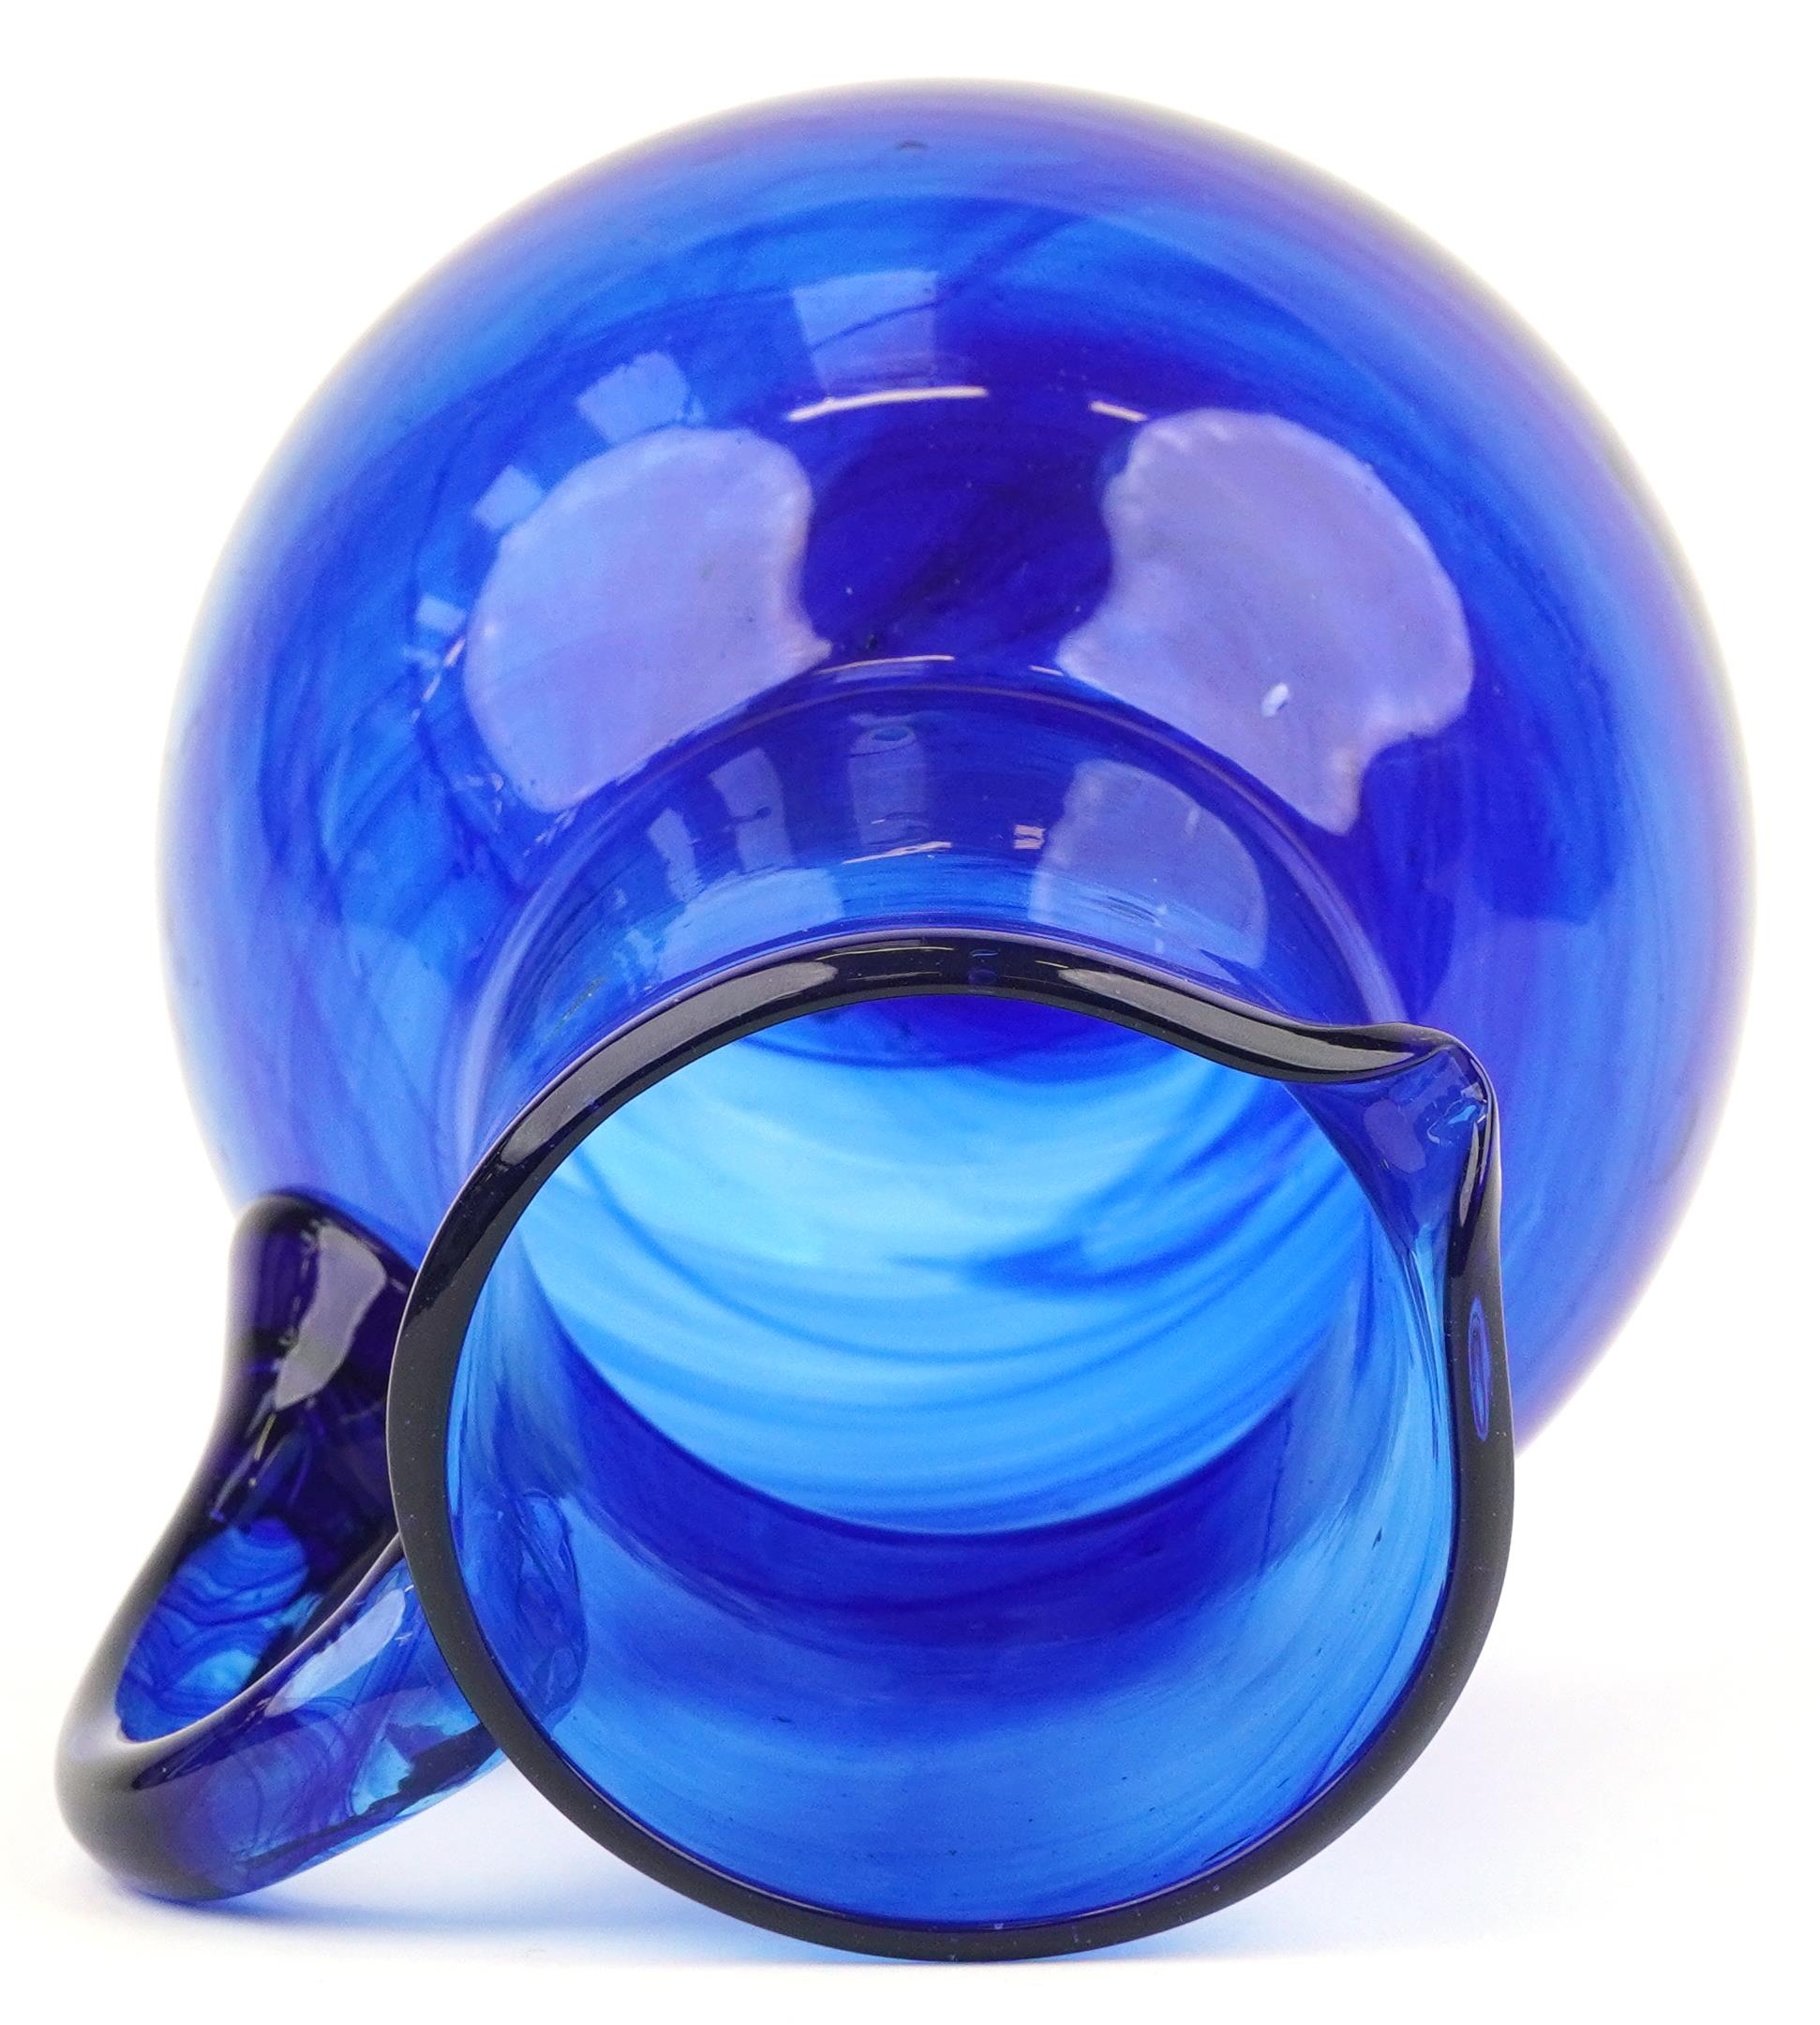 Blue art glass jug with unpolished pontil, 18cm high - Image 3 of 5